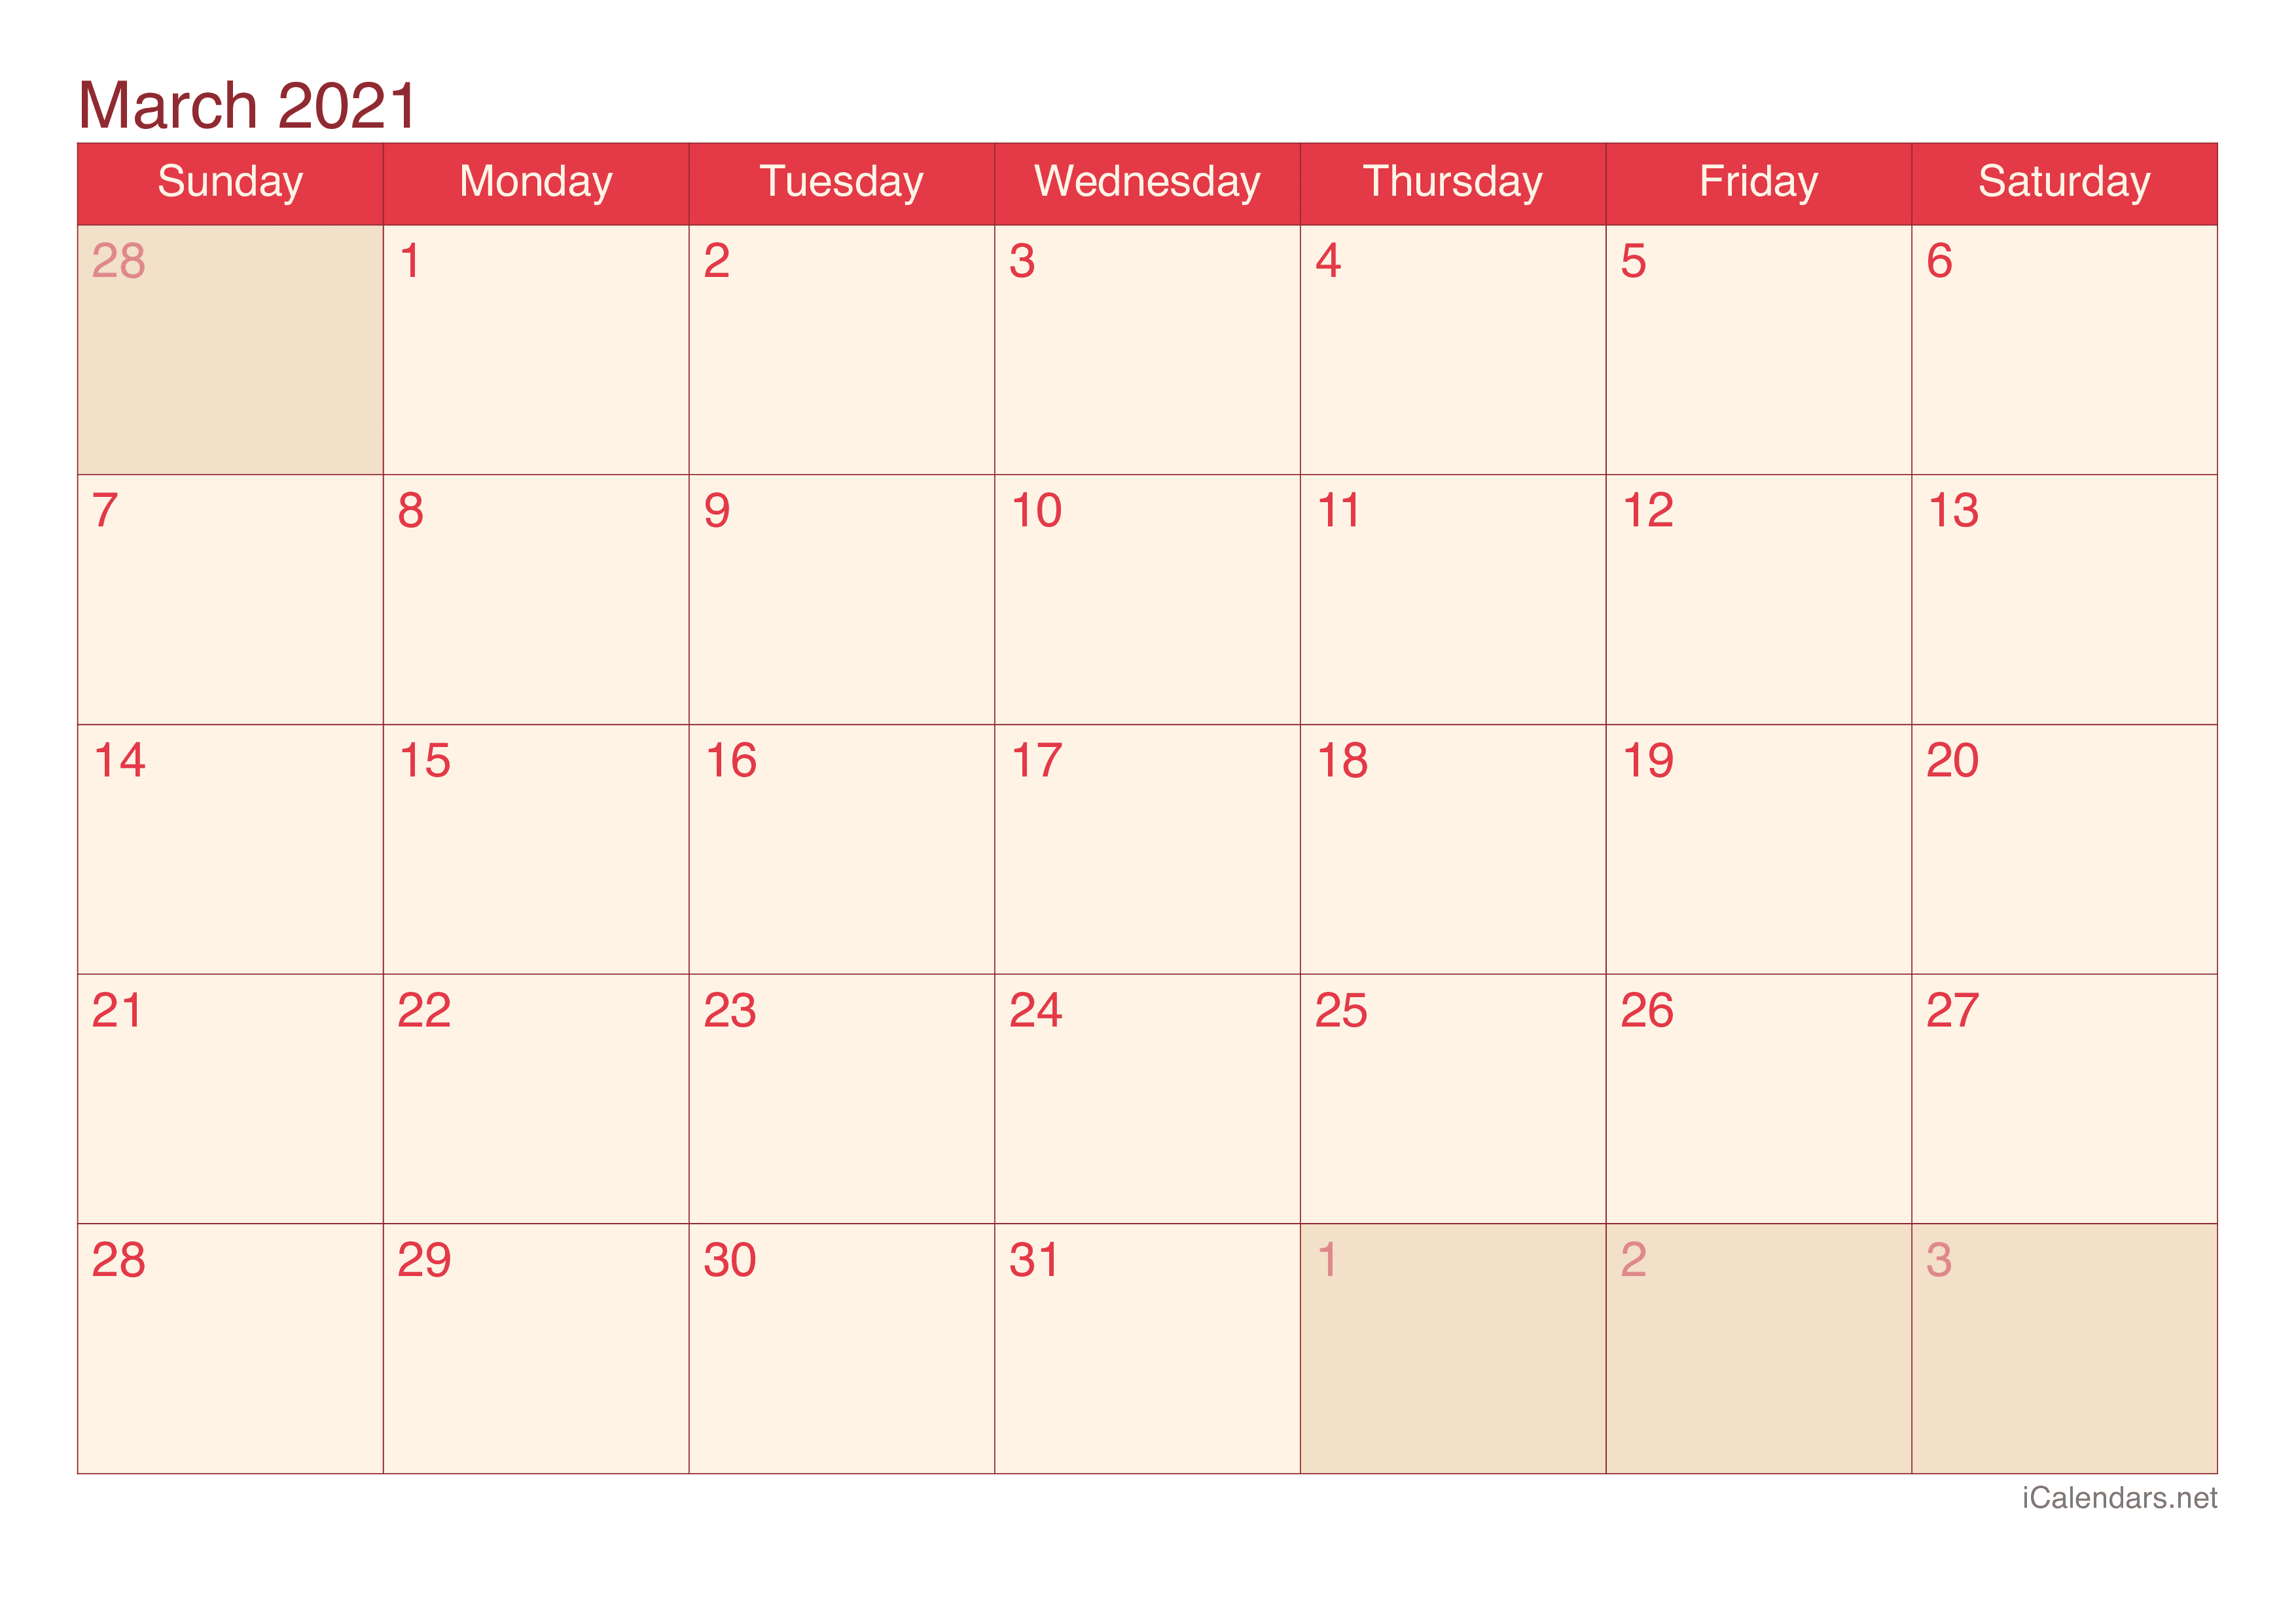 2021 March Calendar - Cherry